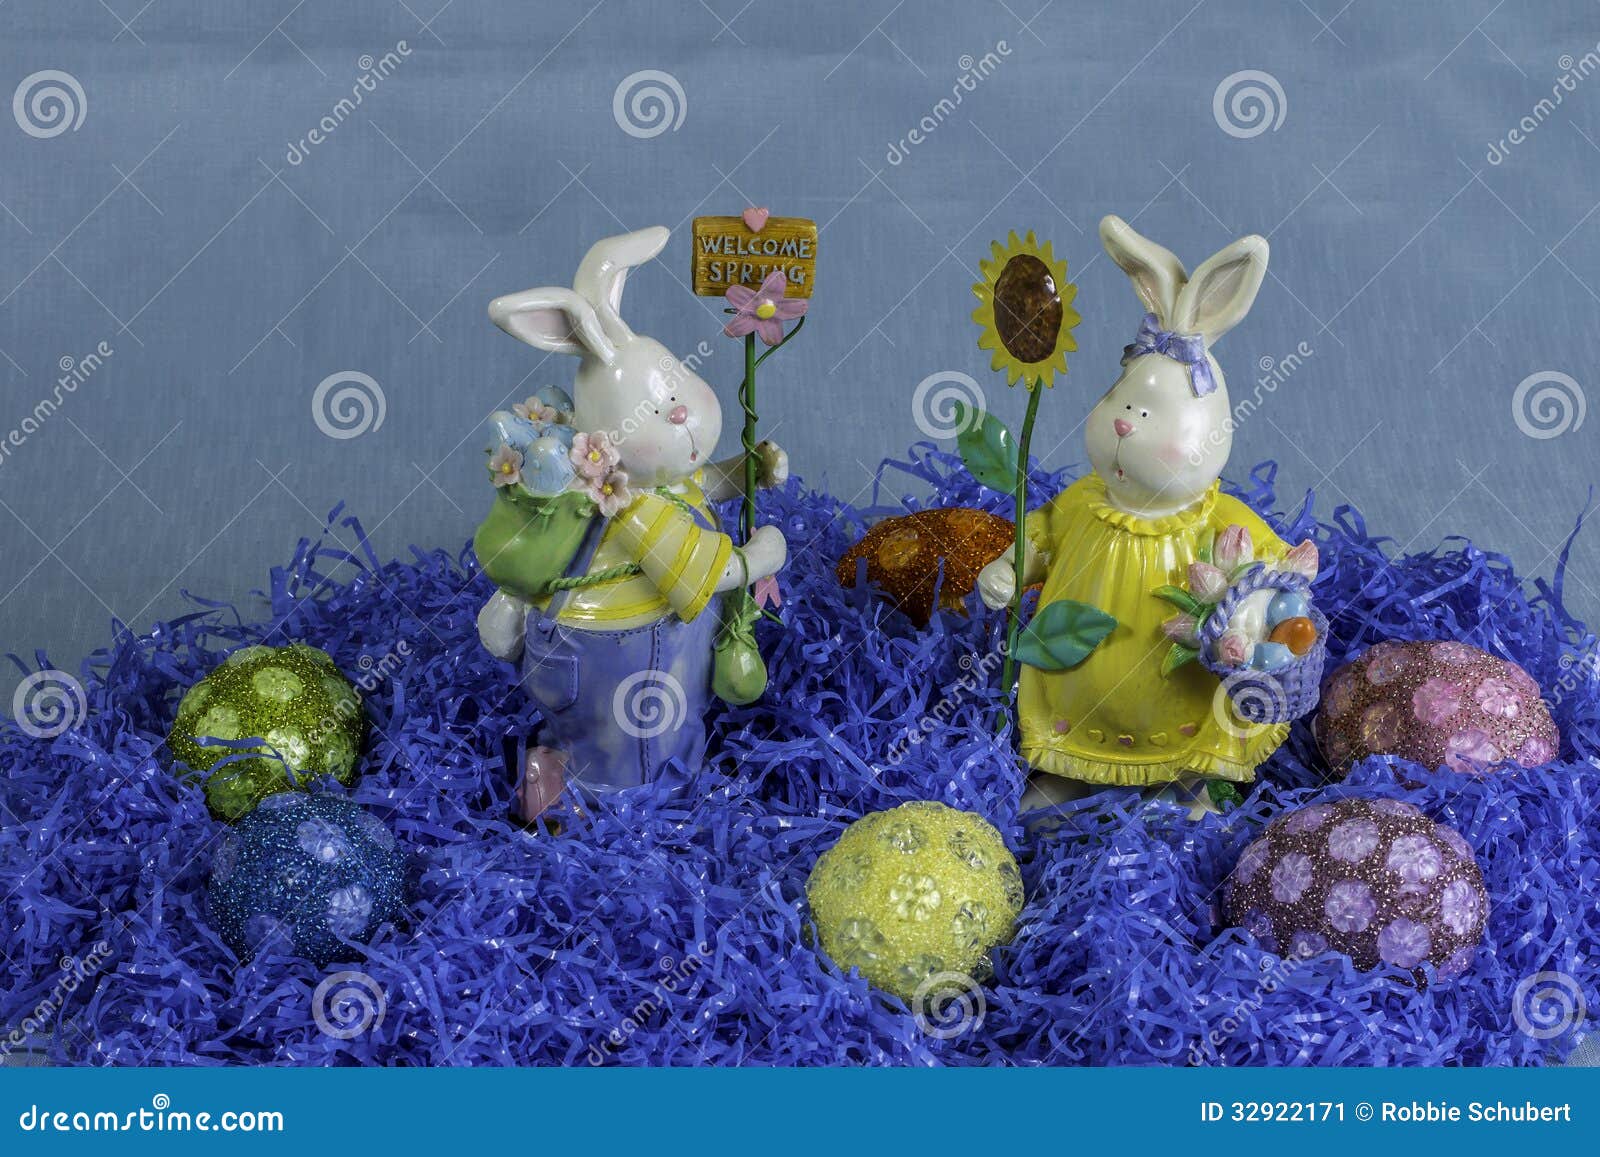 Ovos da páscoa 4. Um grupo de ovos da páscoa cercados pela grama azul falsificada e pelas duas estátuas do coelho.